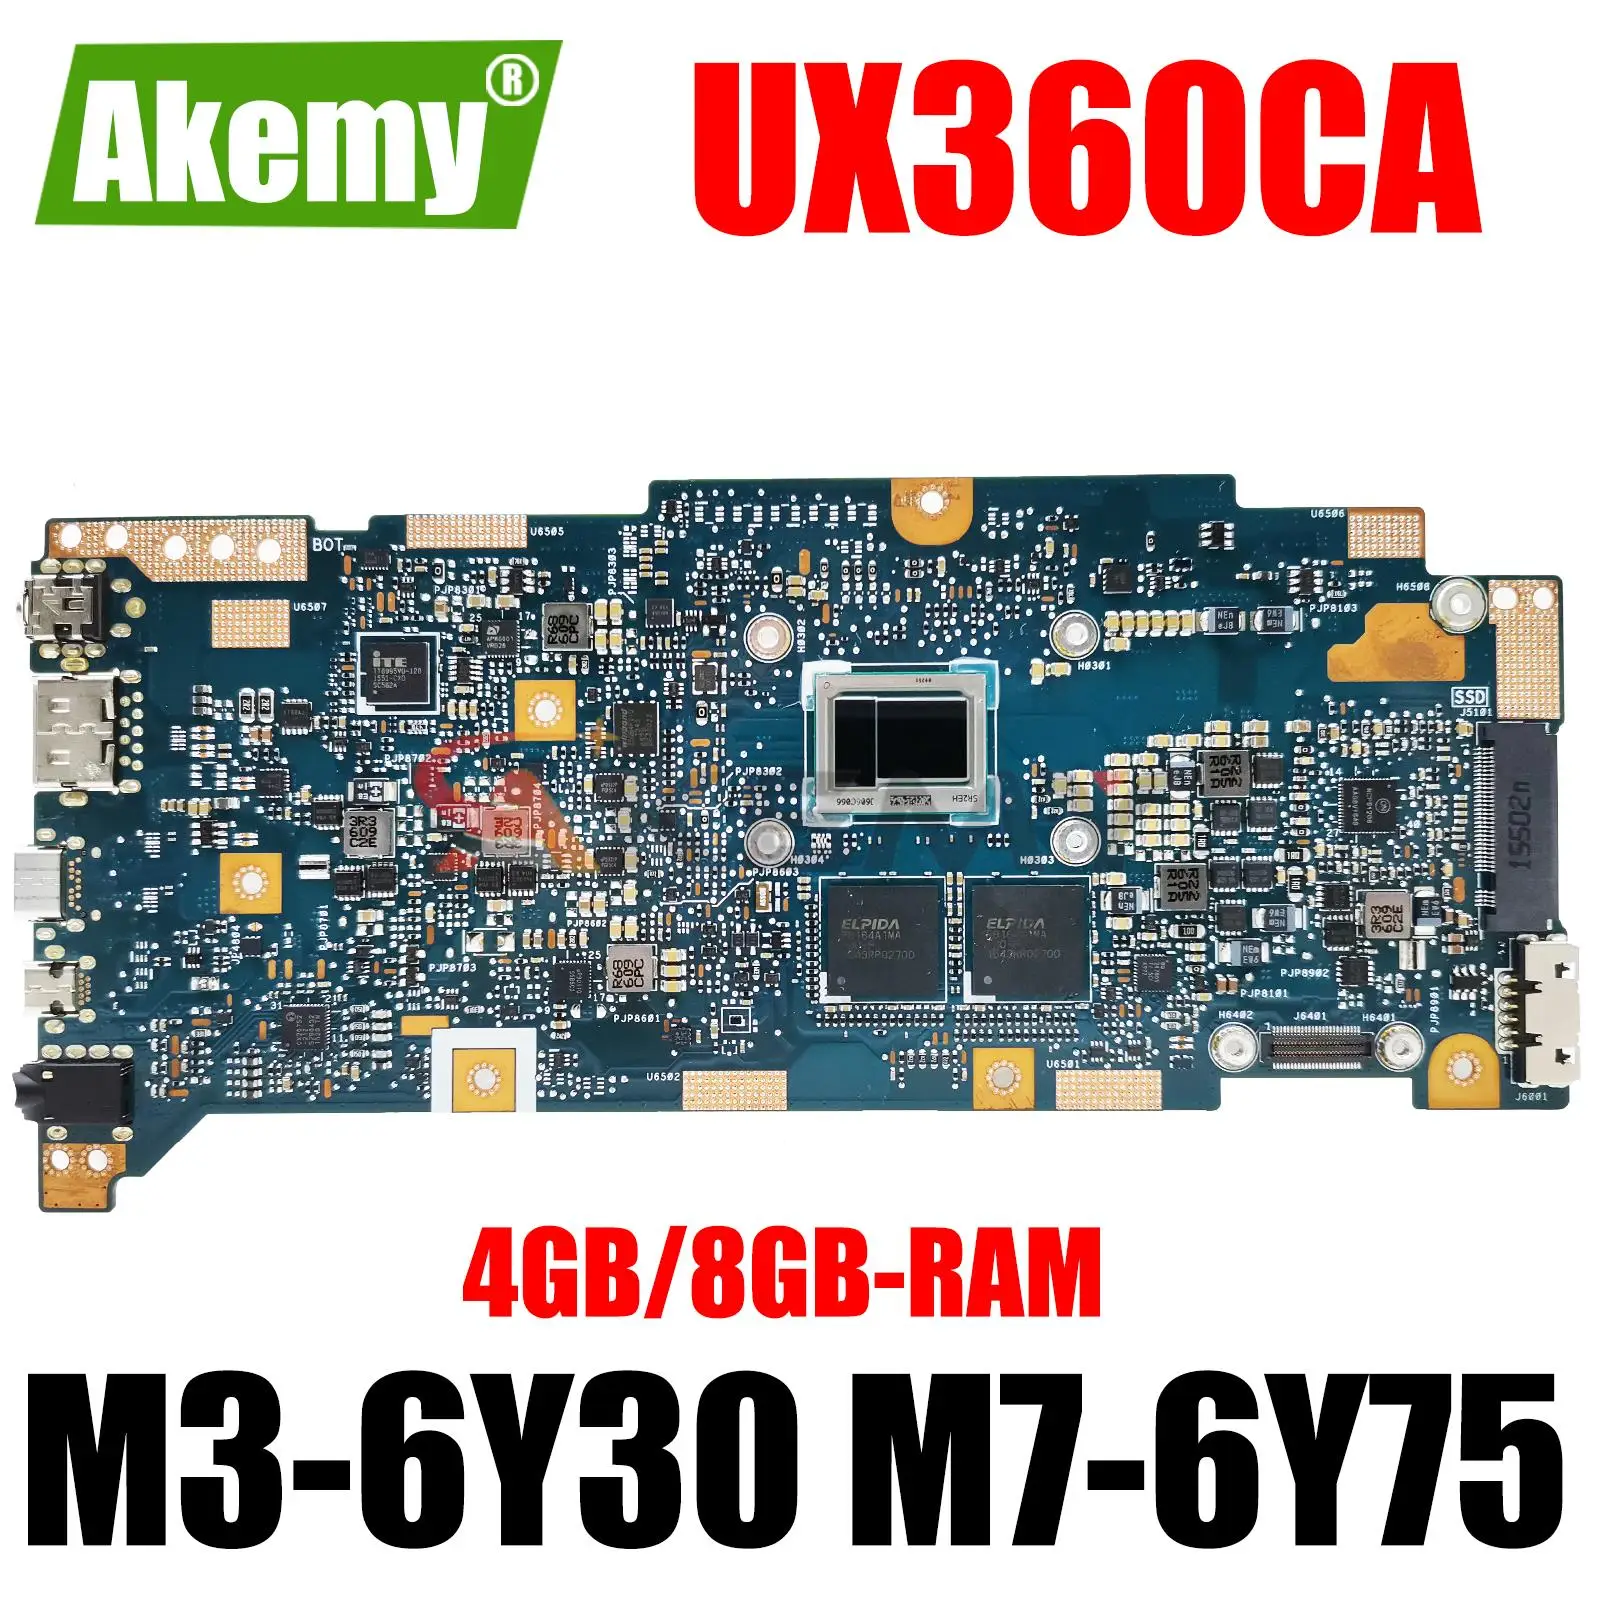 

UX360CA Laptop Motherboard M3-6Y30 7Y30 M7-6Y75 I5-7Y54 4GB/8GB-RAM For ASUS Zenbook UX360C UX360CAK Ultrabook Mainboard